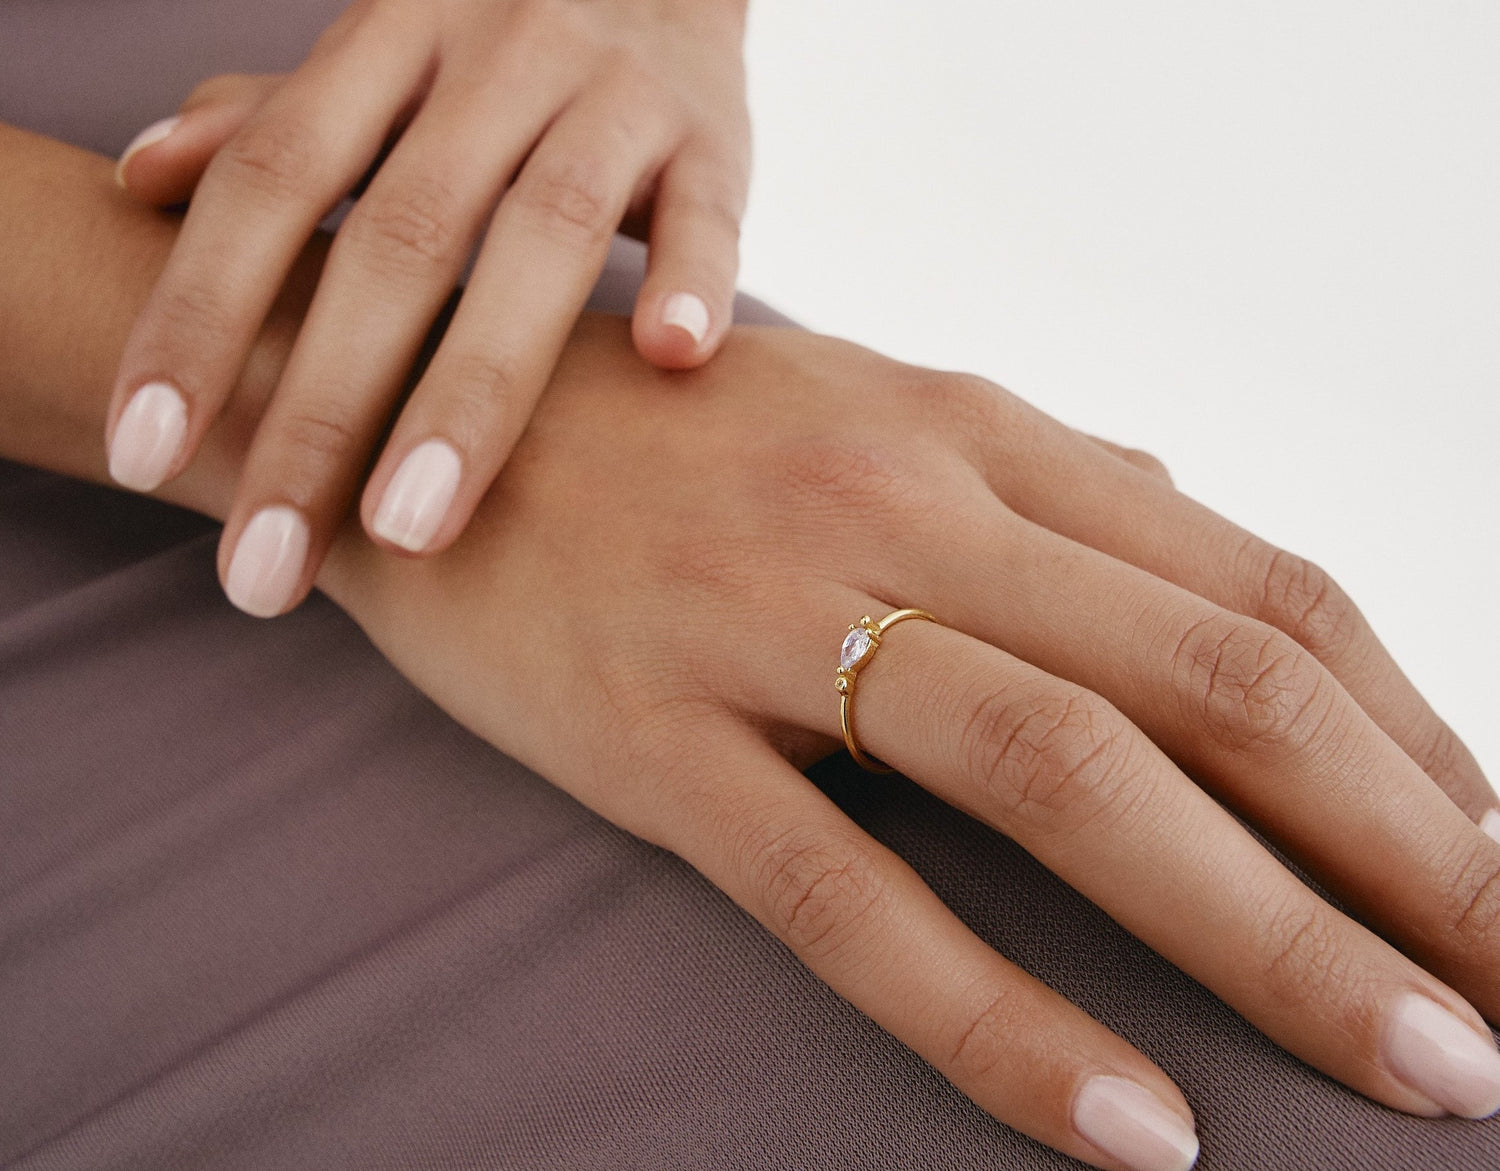 Cuál es el significado de los anillos en los dedos